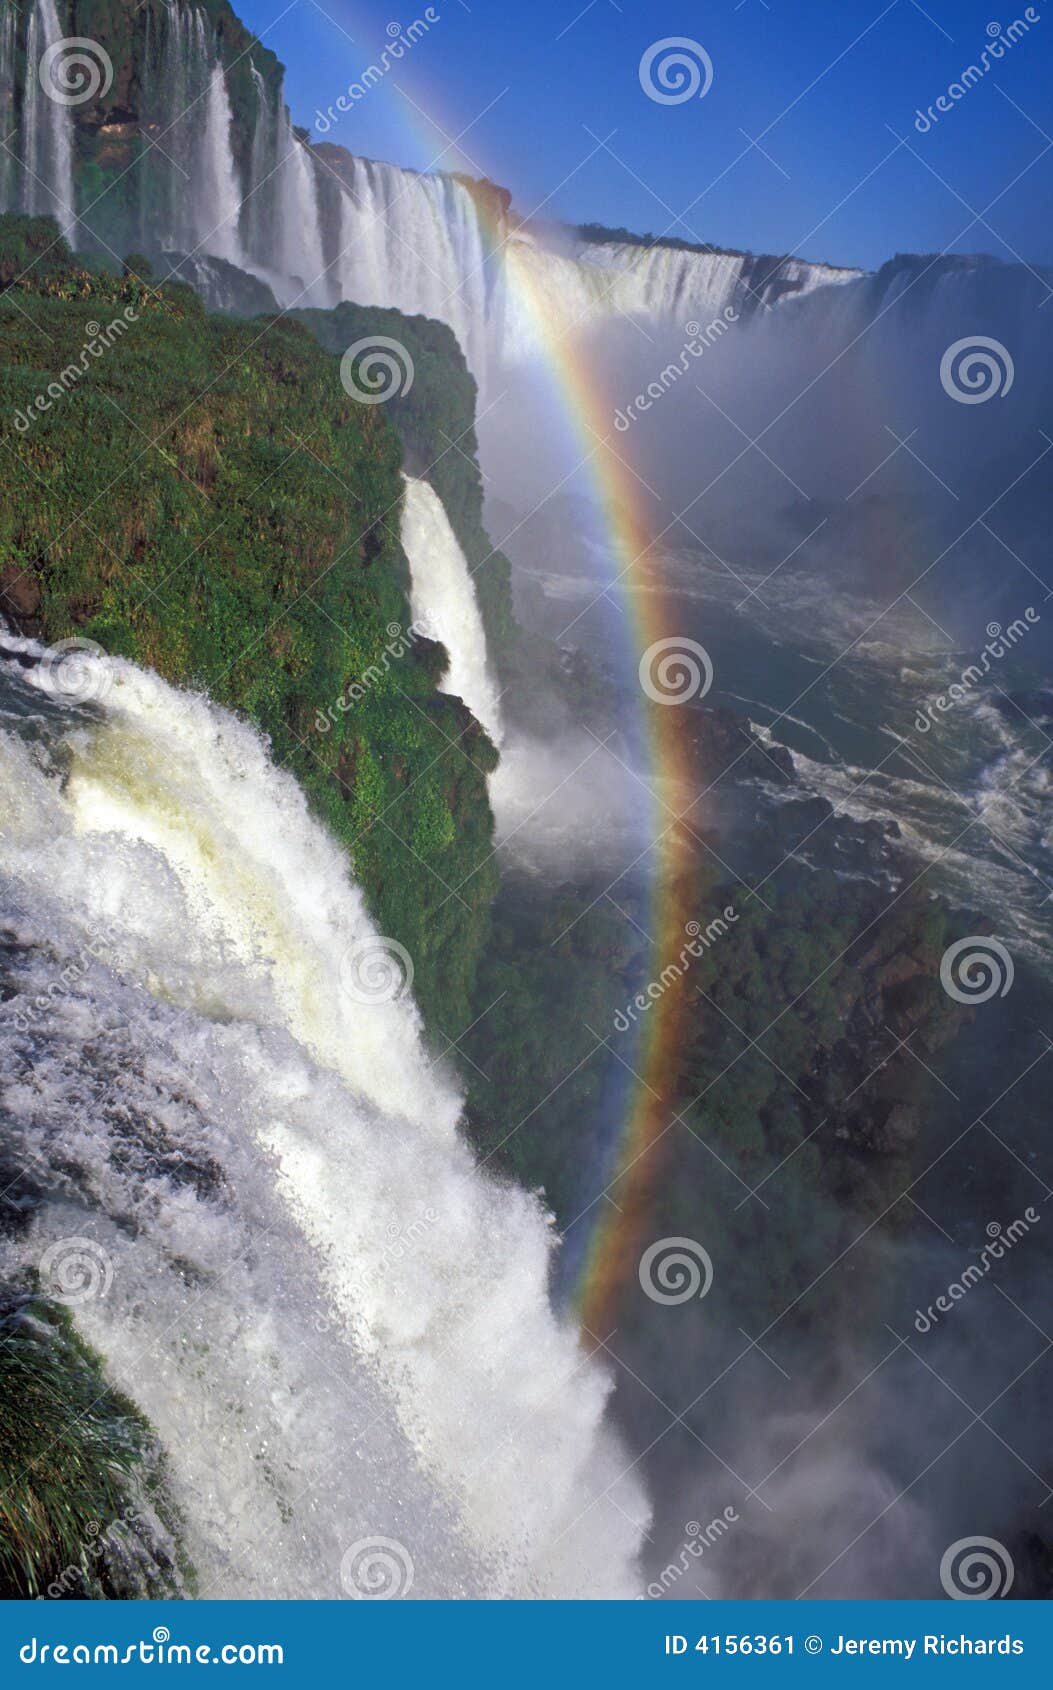 rainbow over iguacu falls